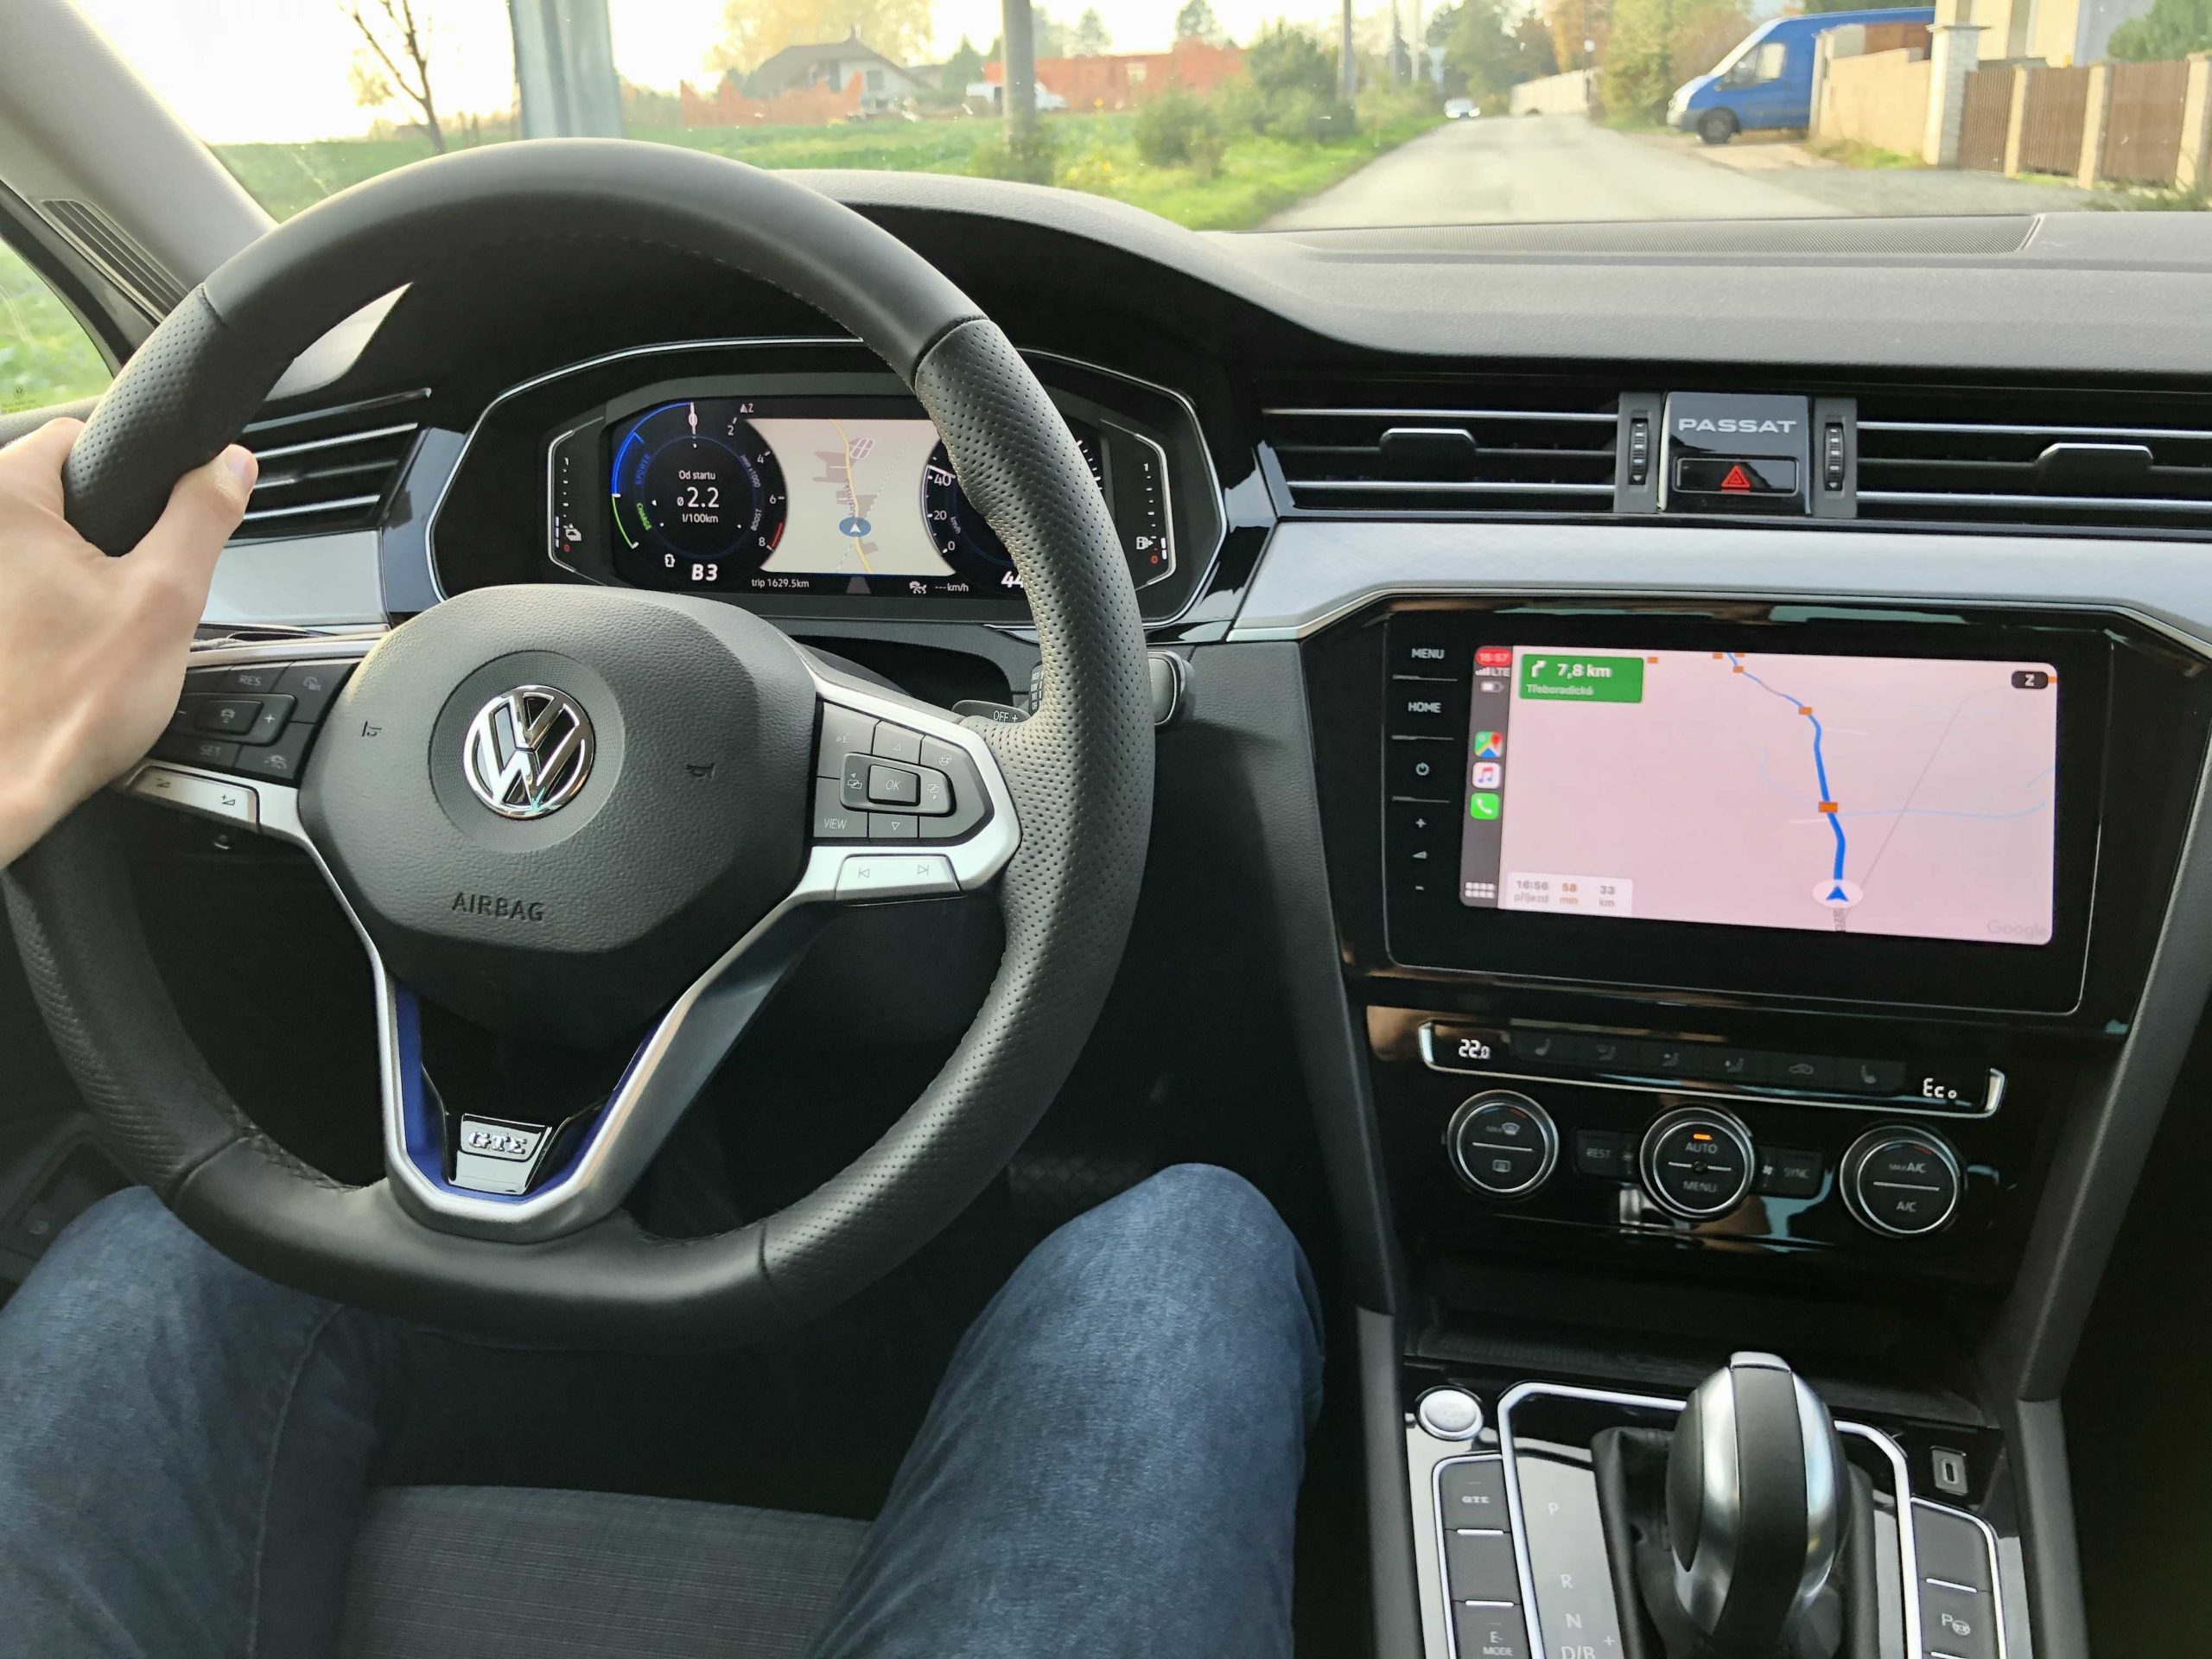 VW Passat GTE